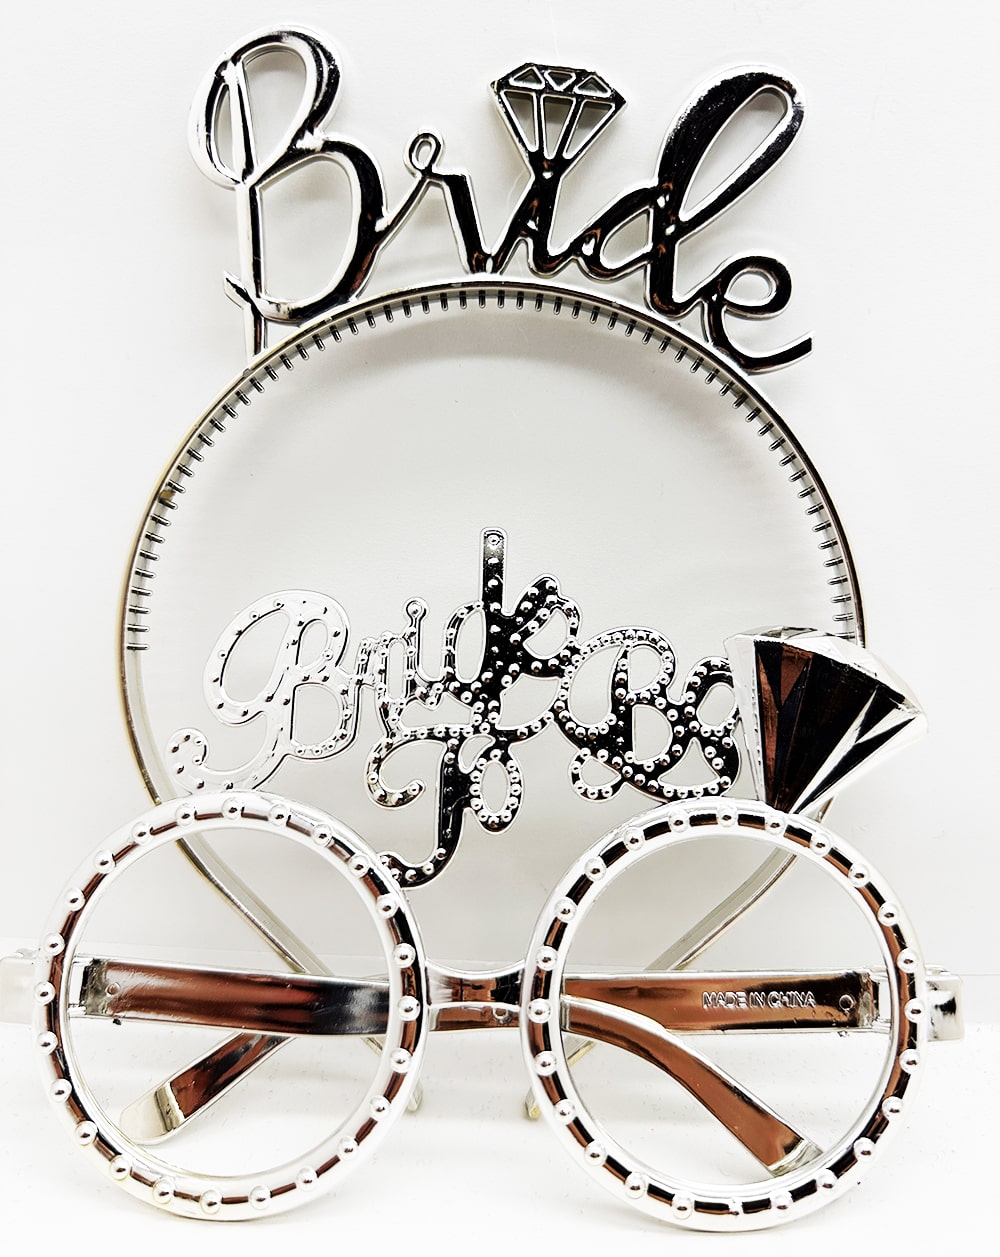 Bride Yazılı Taç ve Bride To Be Yazılı Gözlük Seti Gümüş Renk  (CLZ)